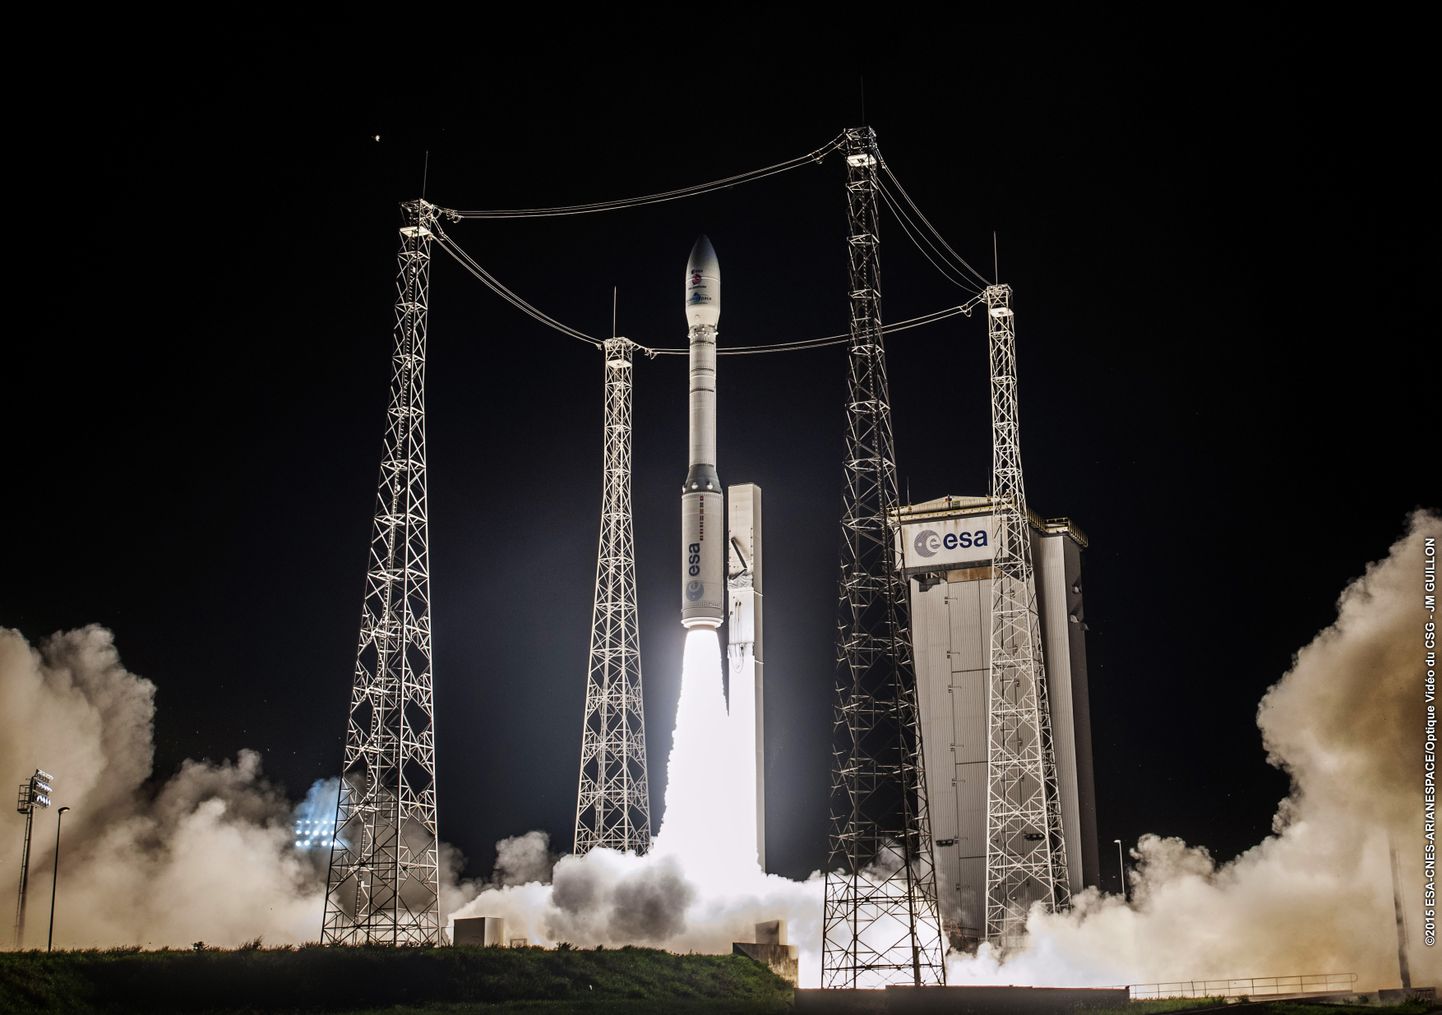 Euroopa Kosmoseagentuuri (ESA) rakett Vega stardib Prantsuse Guajaanast 2015. aastal.